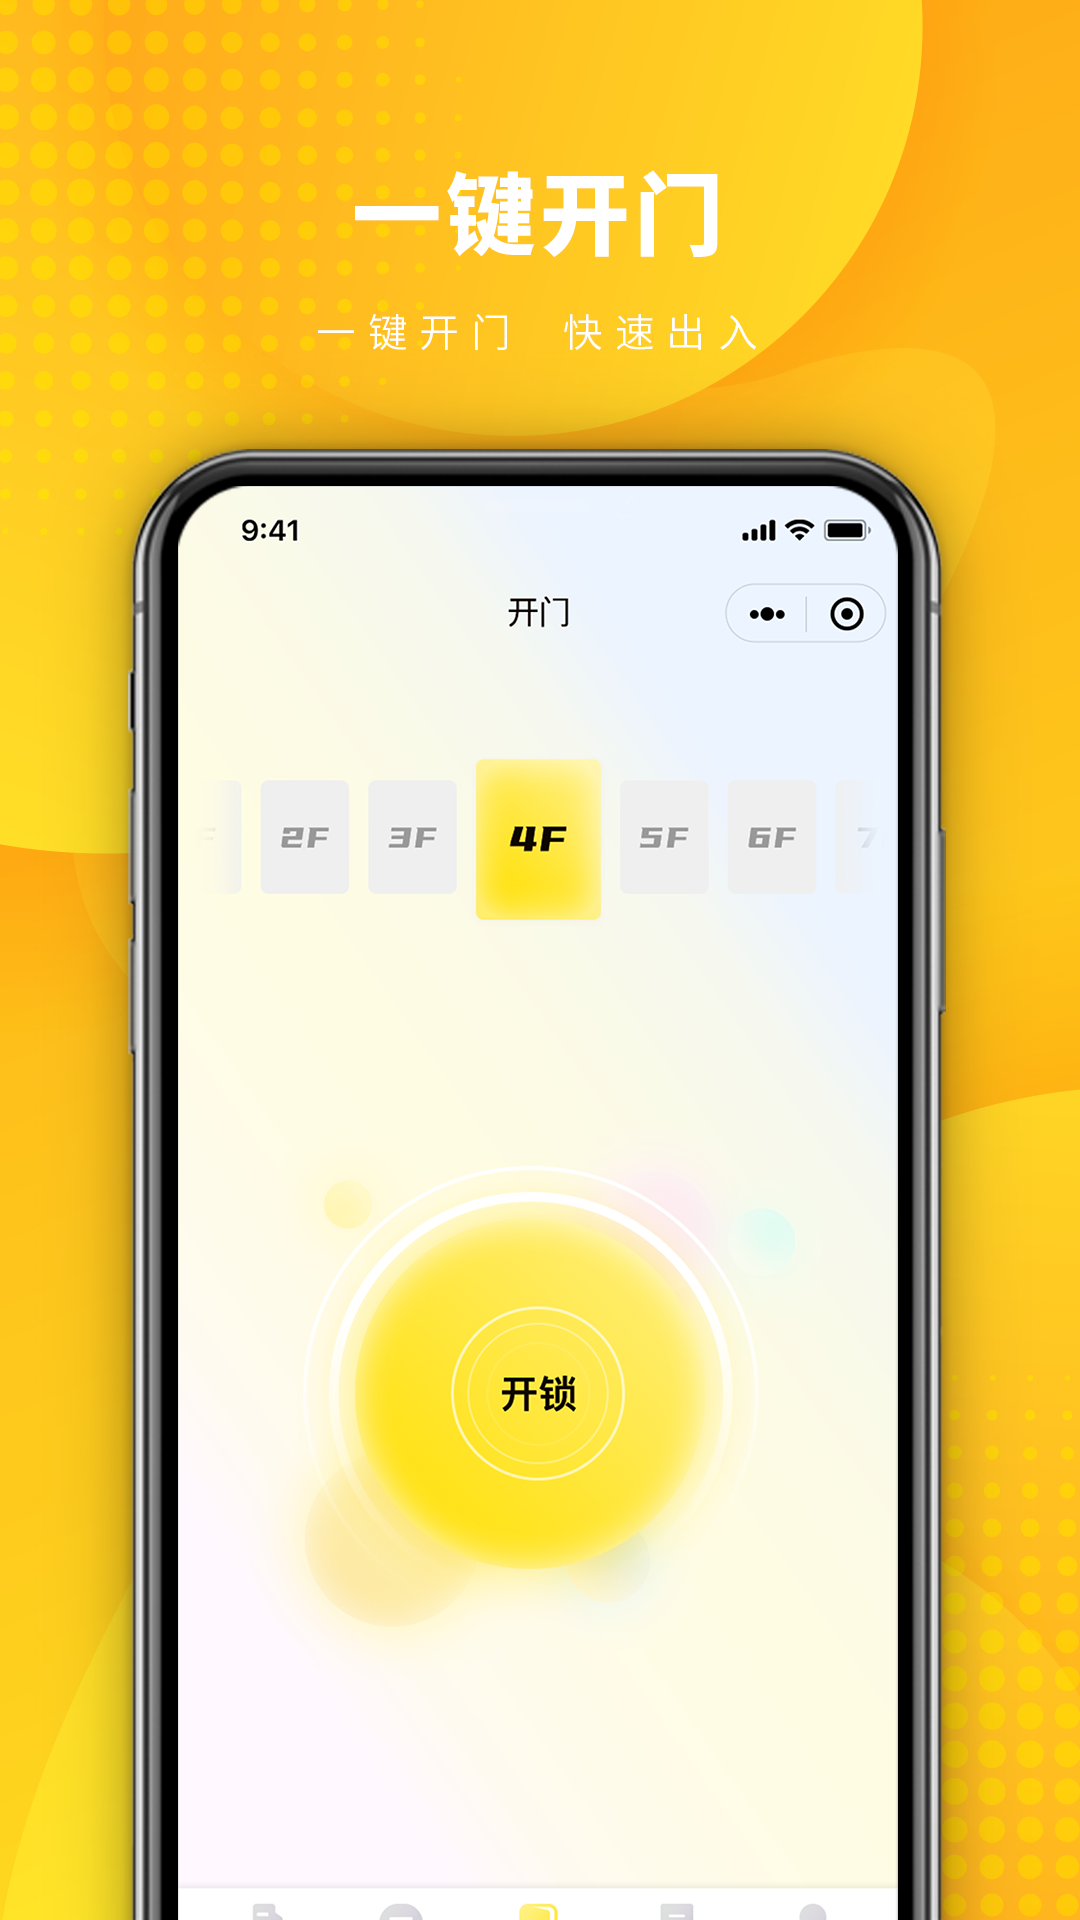 蚁邻未来社区(一键开门)app更新优化版